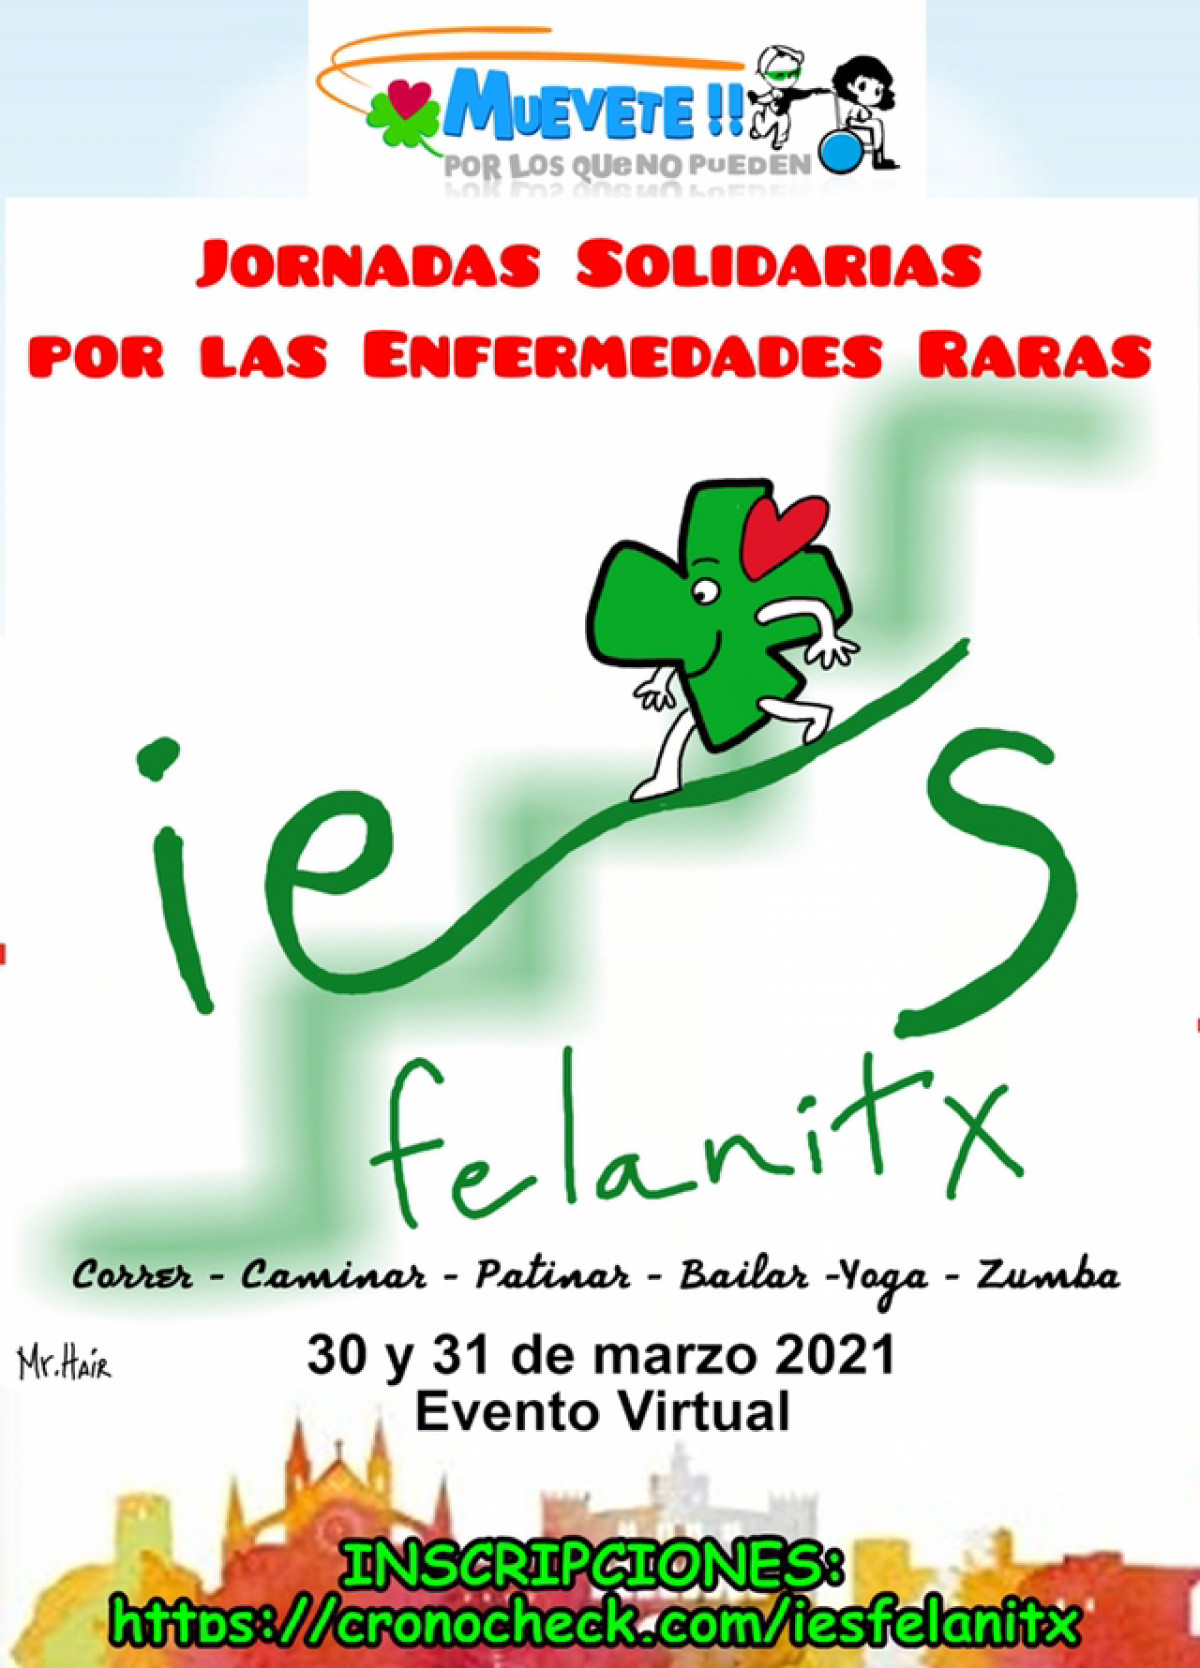 Jornadas Solidarias IES Felanitx por las Enfermedades Raras.